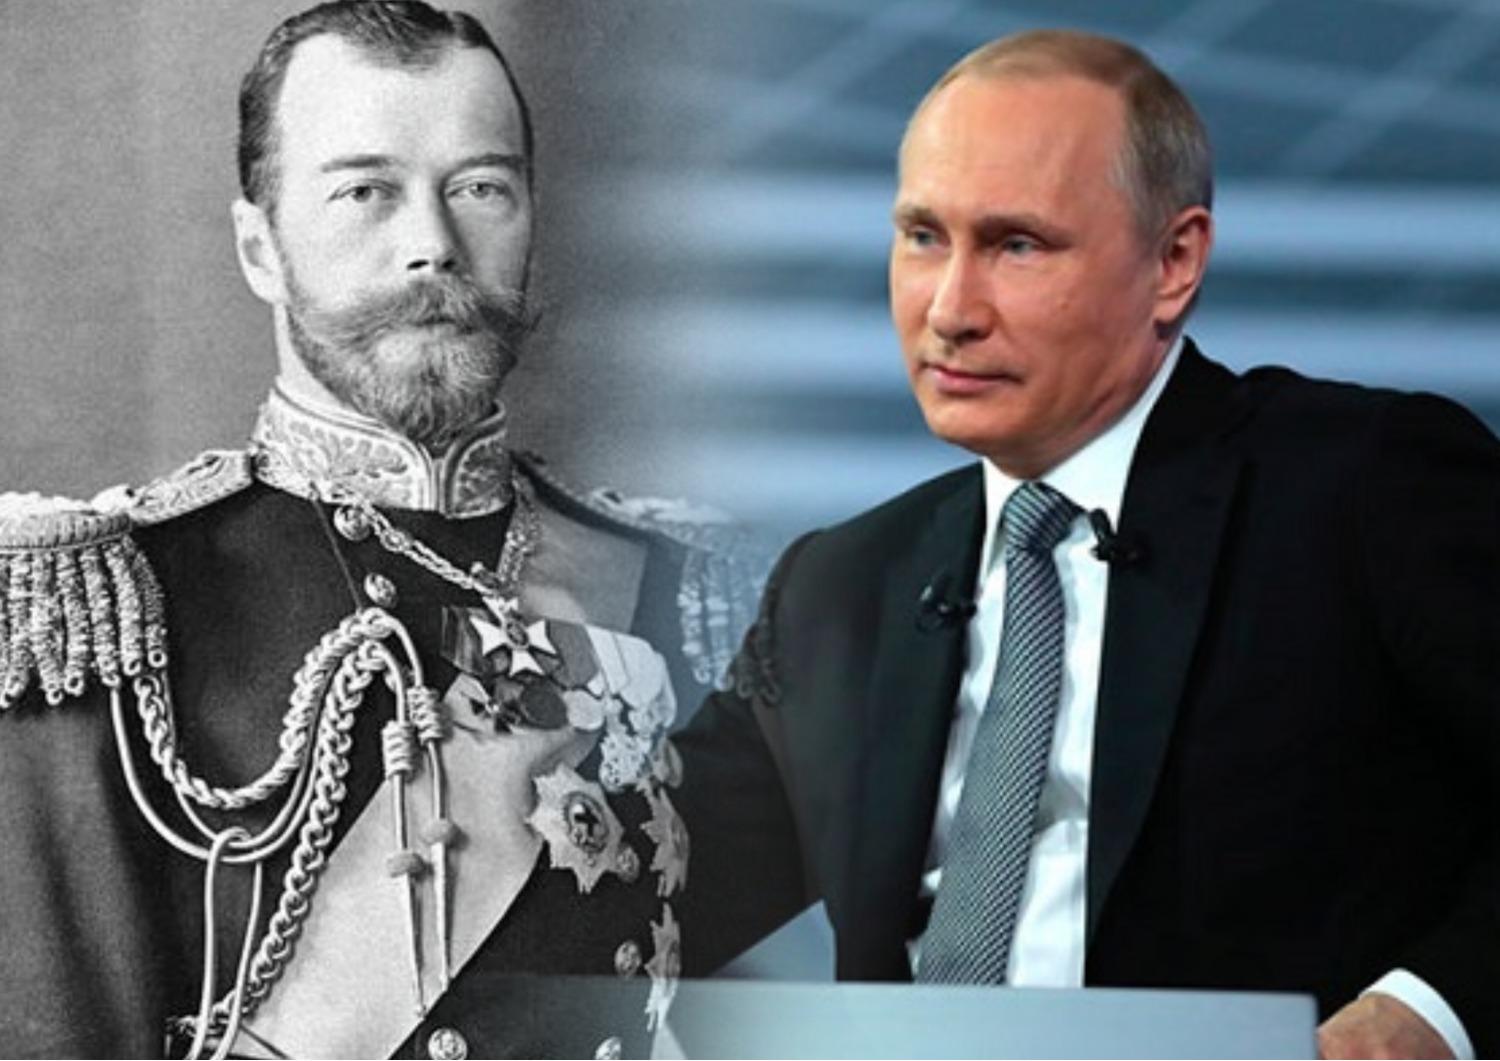 Путин: "Царь - это тот, кто сам только шапку примеряет".